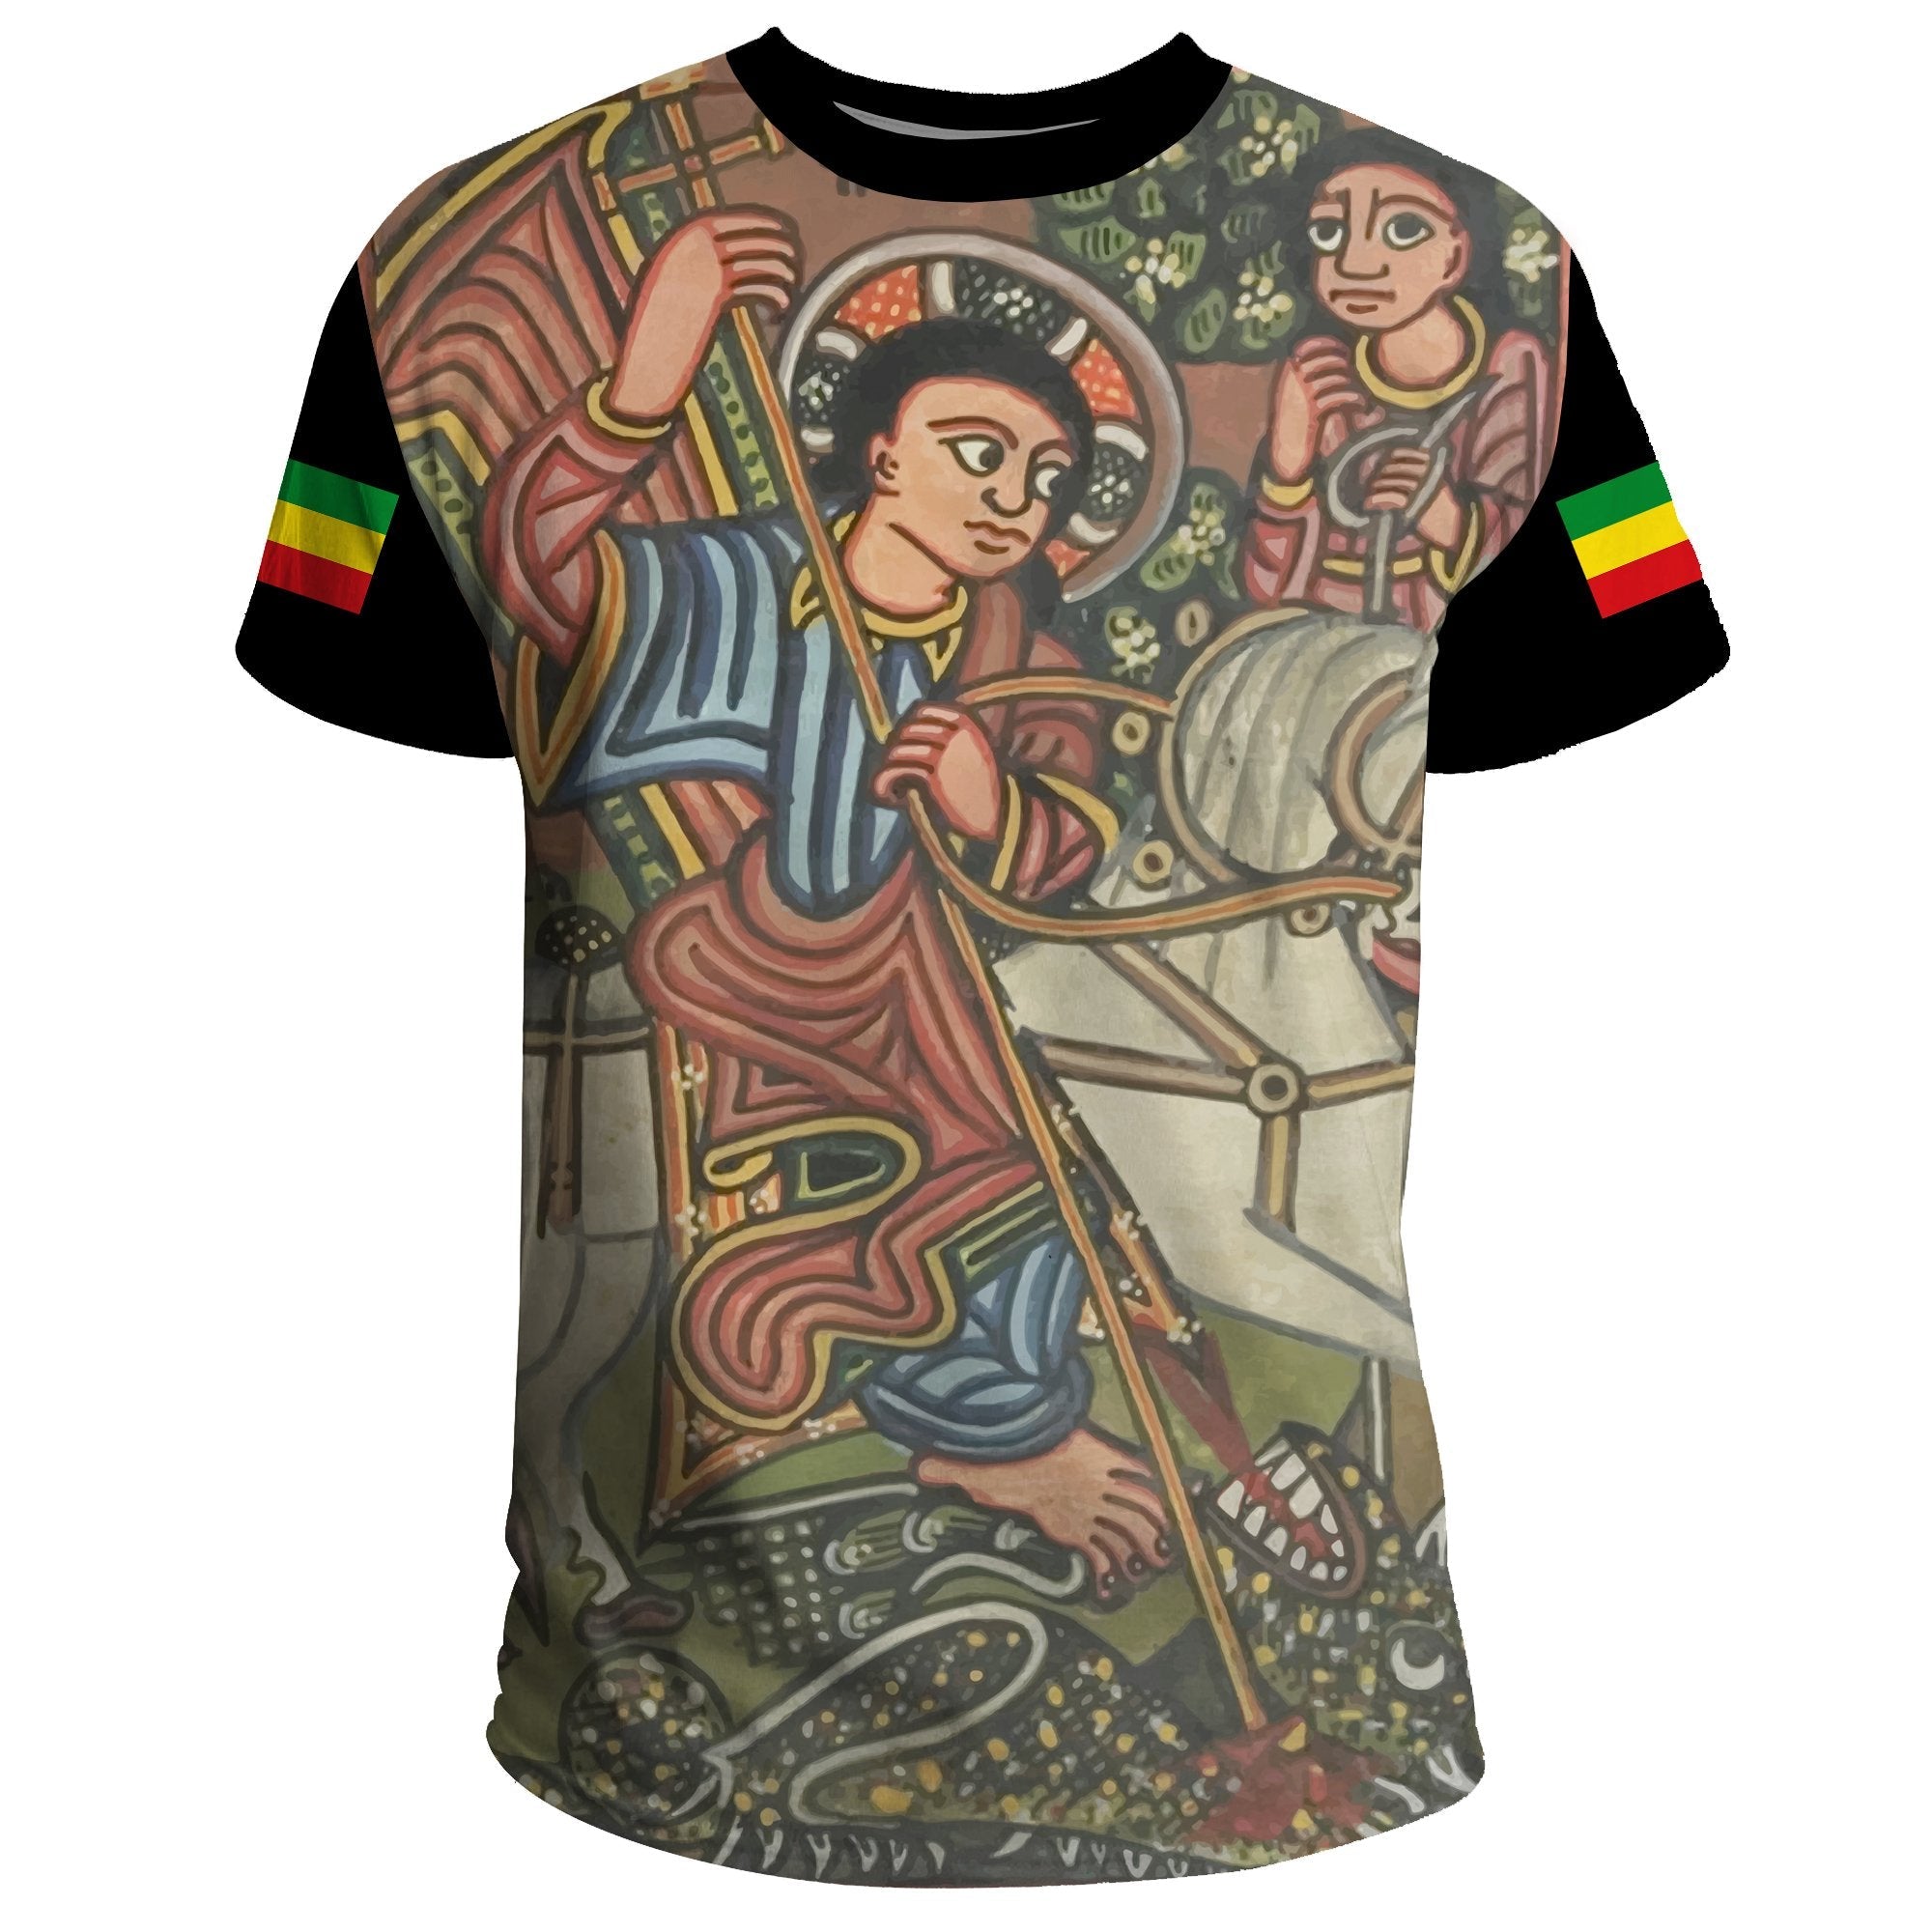 ethiopia-t-shirt-ethiopian-biblical-manuscript